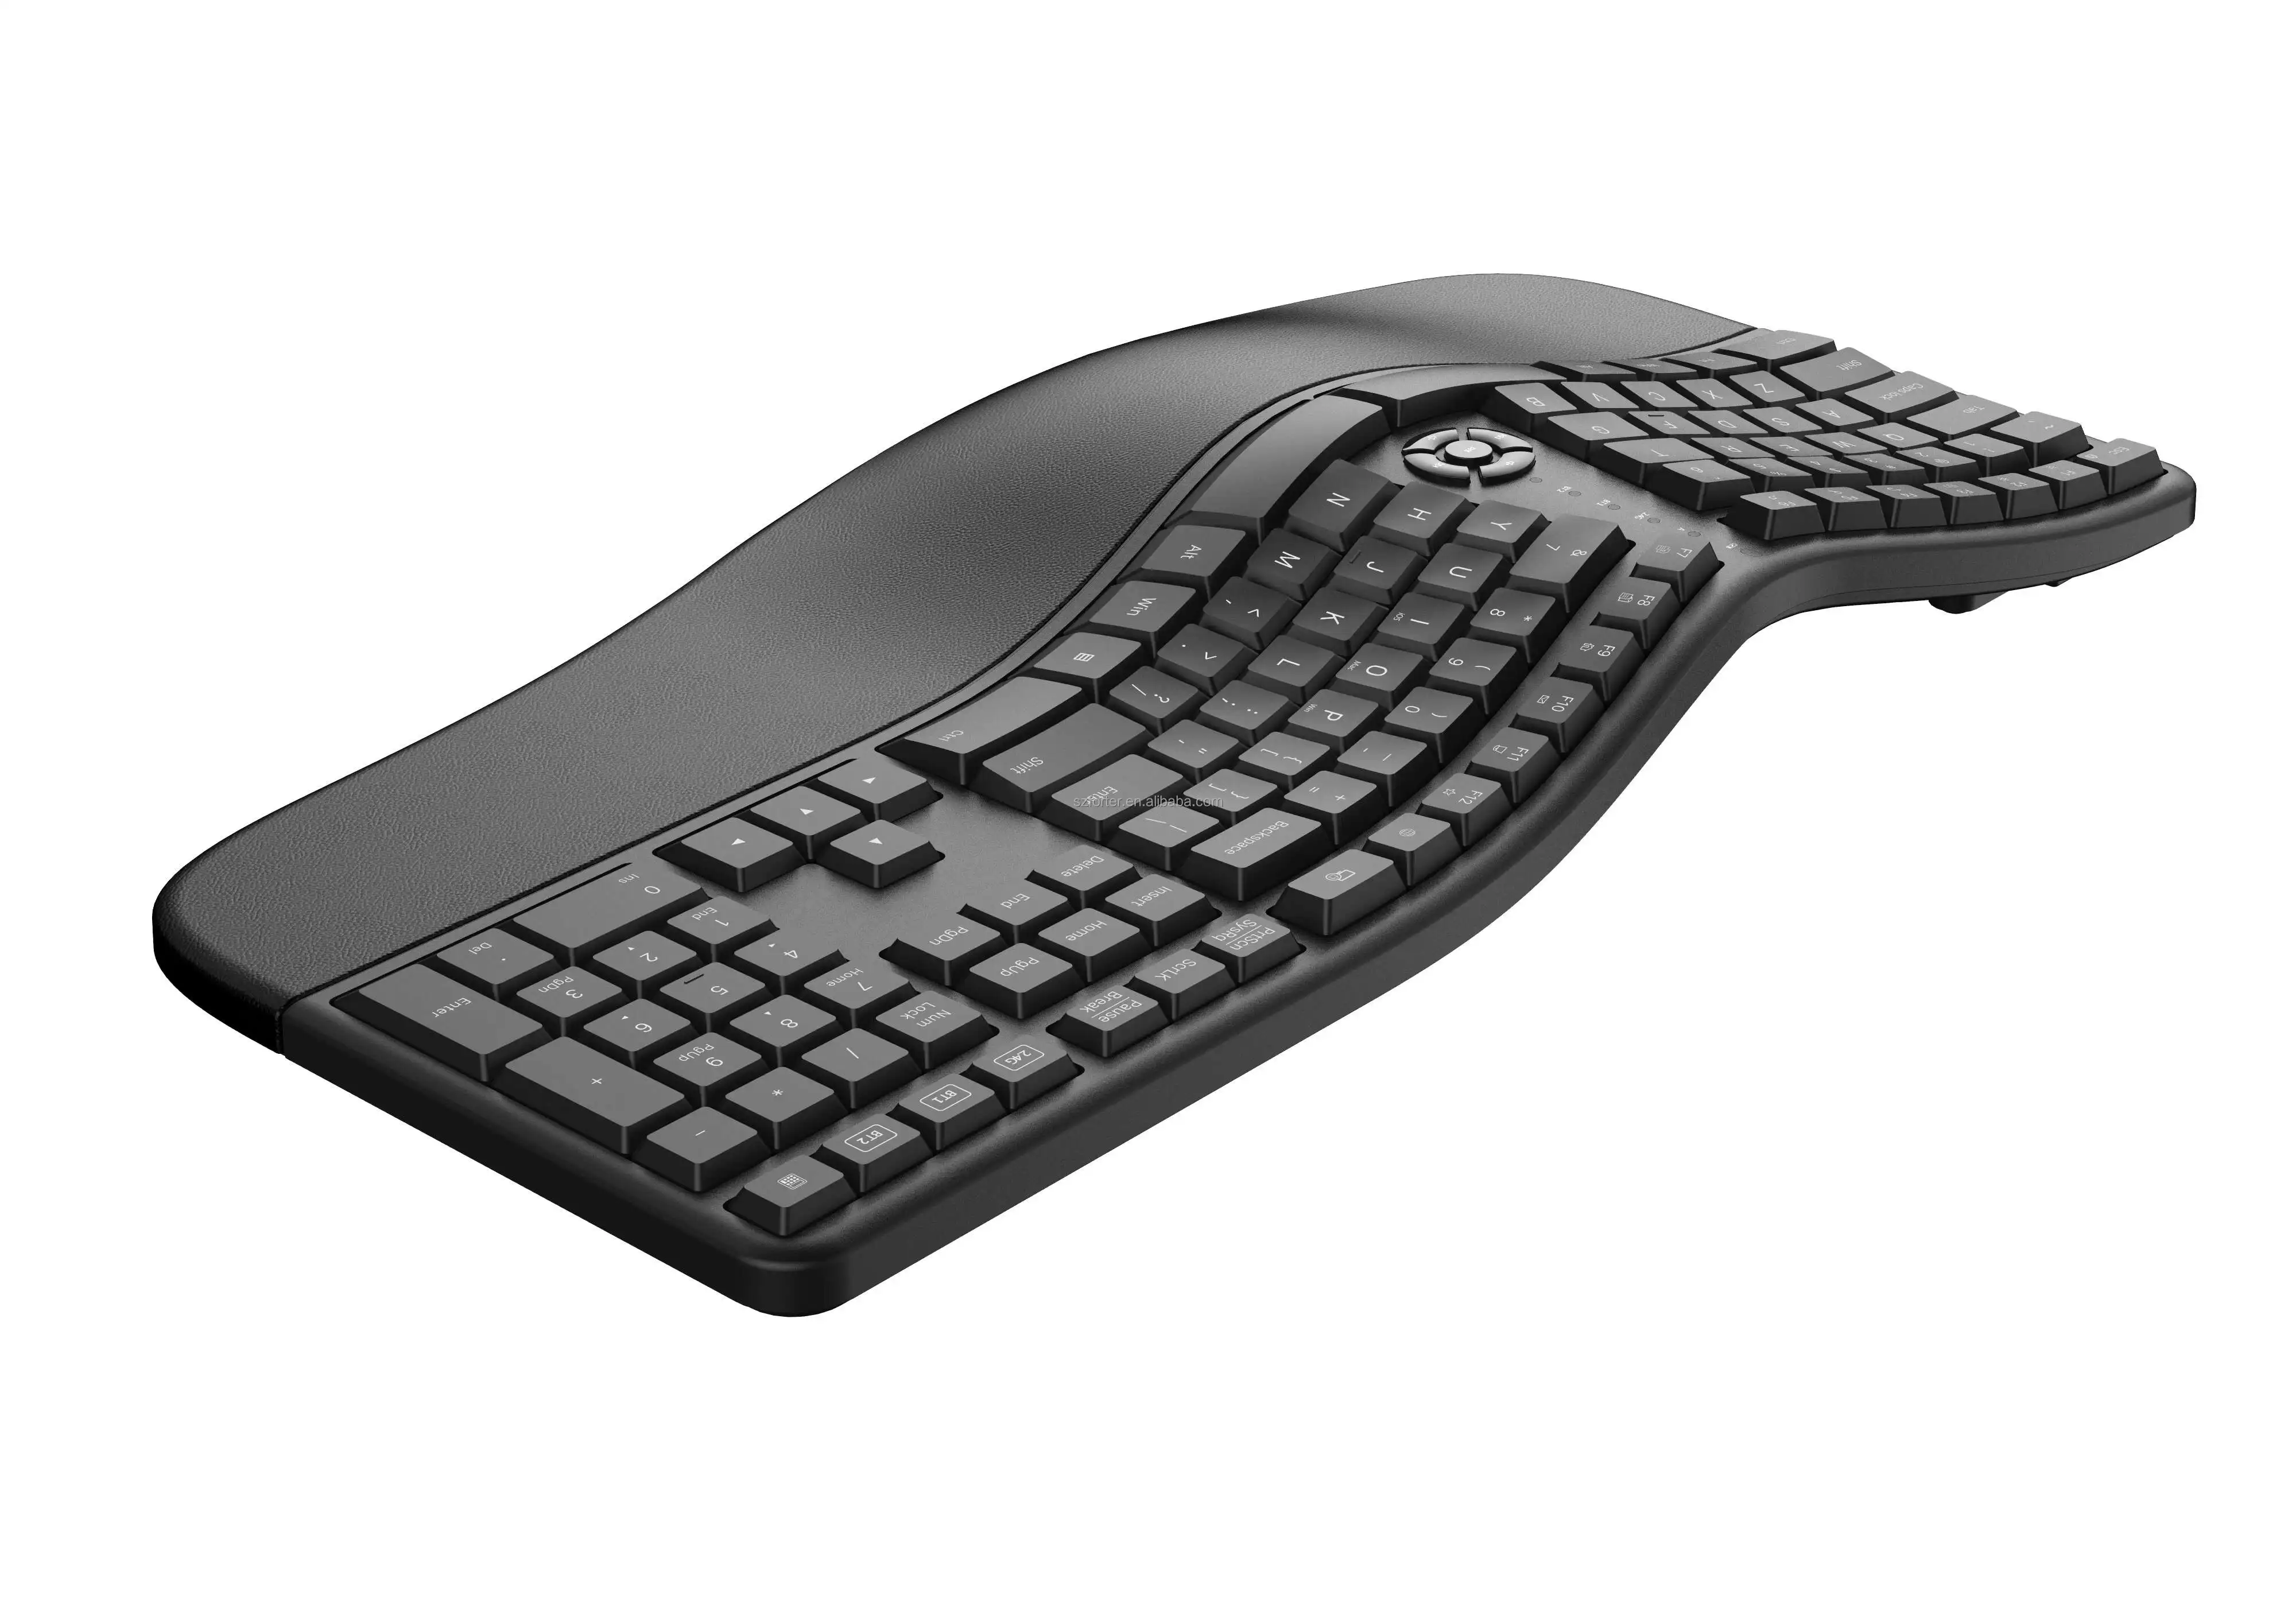 ergonomic wireless keyboard and mouse